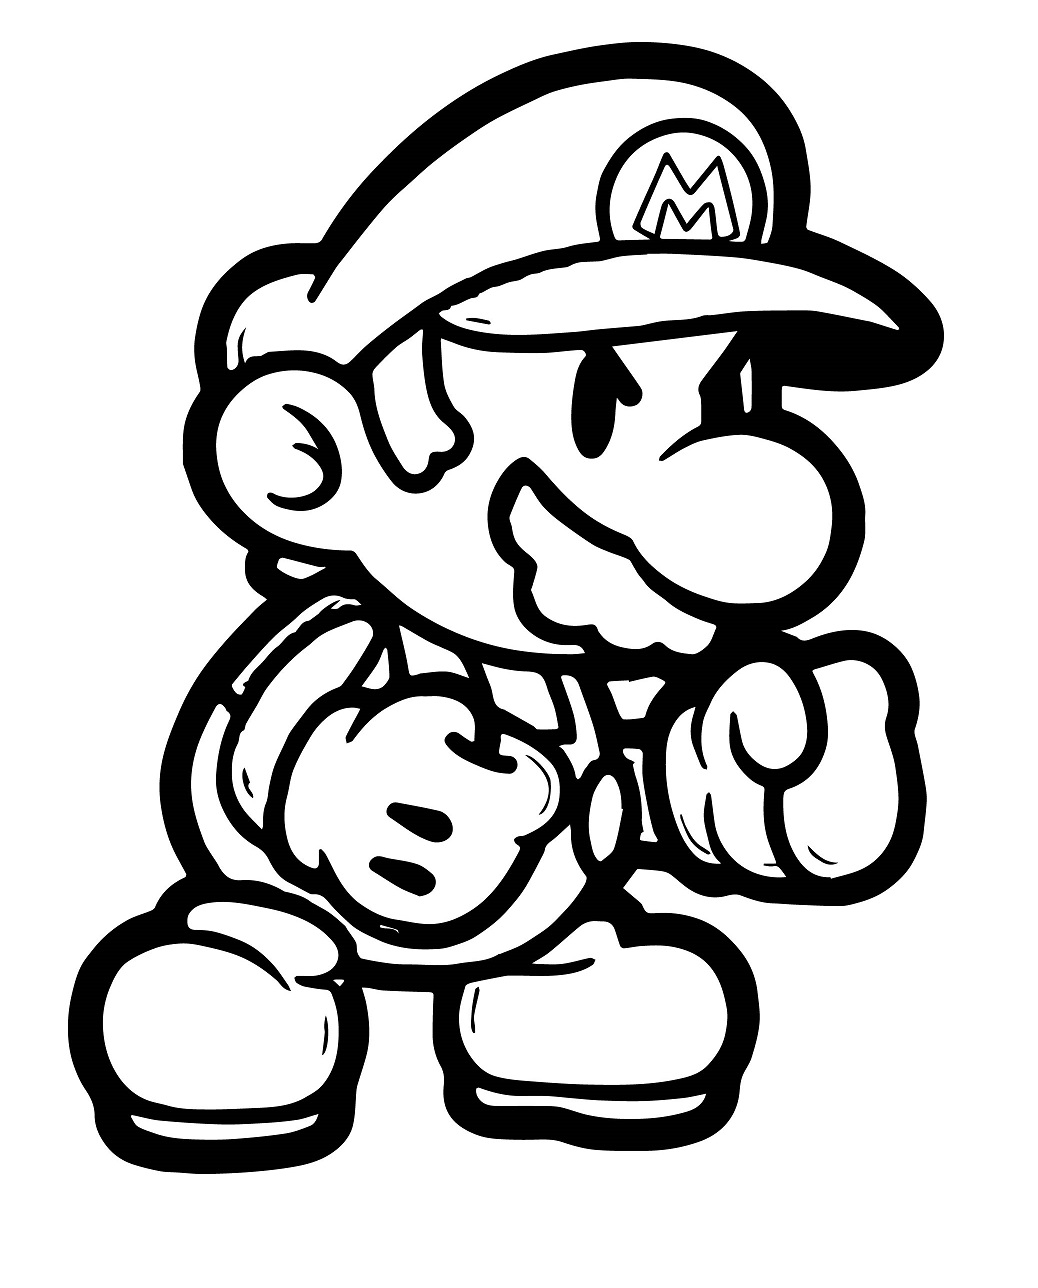 Mario Kick Boxing Coloring Page - Free Printable Coloring ...